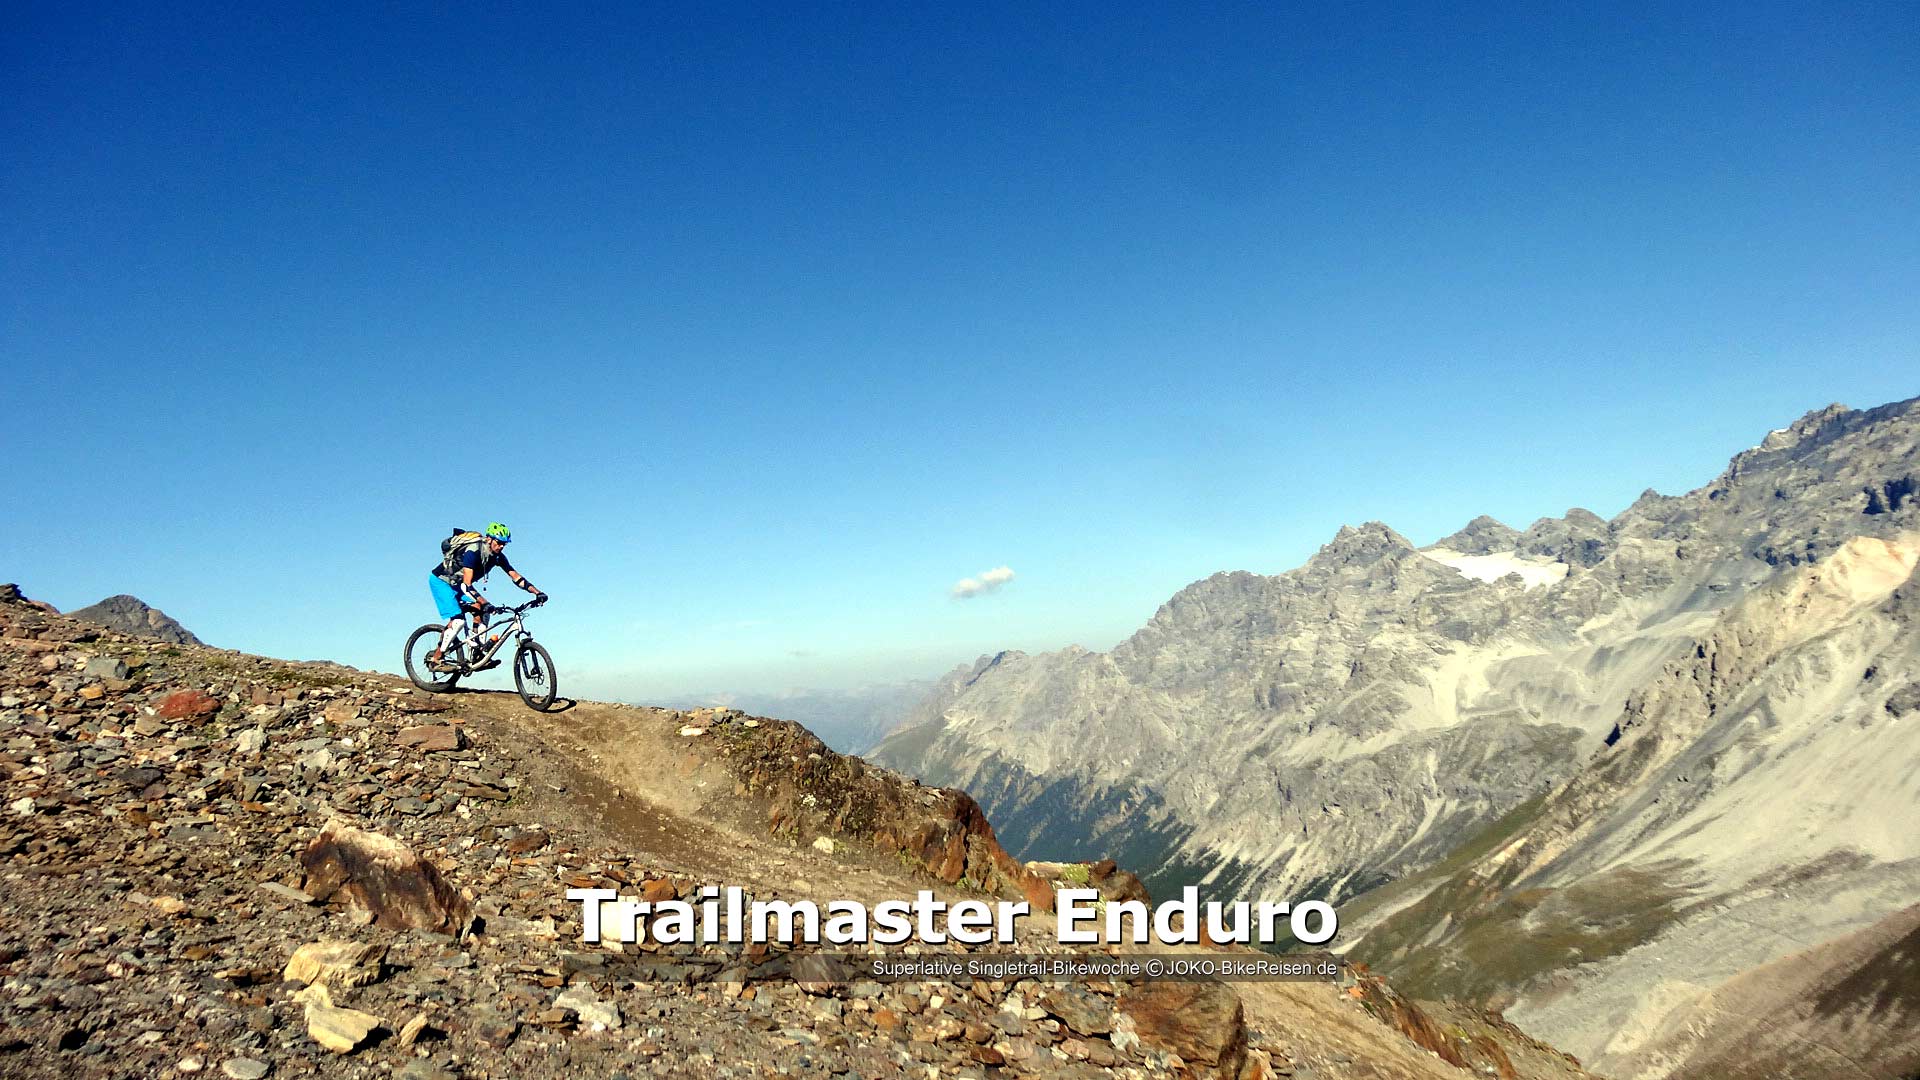 Enduro-Singletrail Mountainbiketour "Trailmaster"